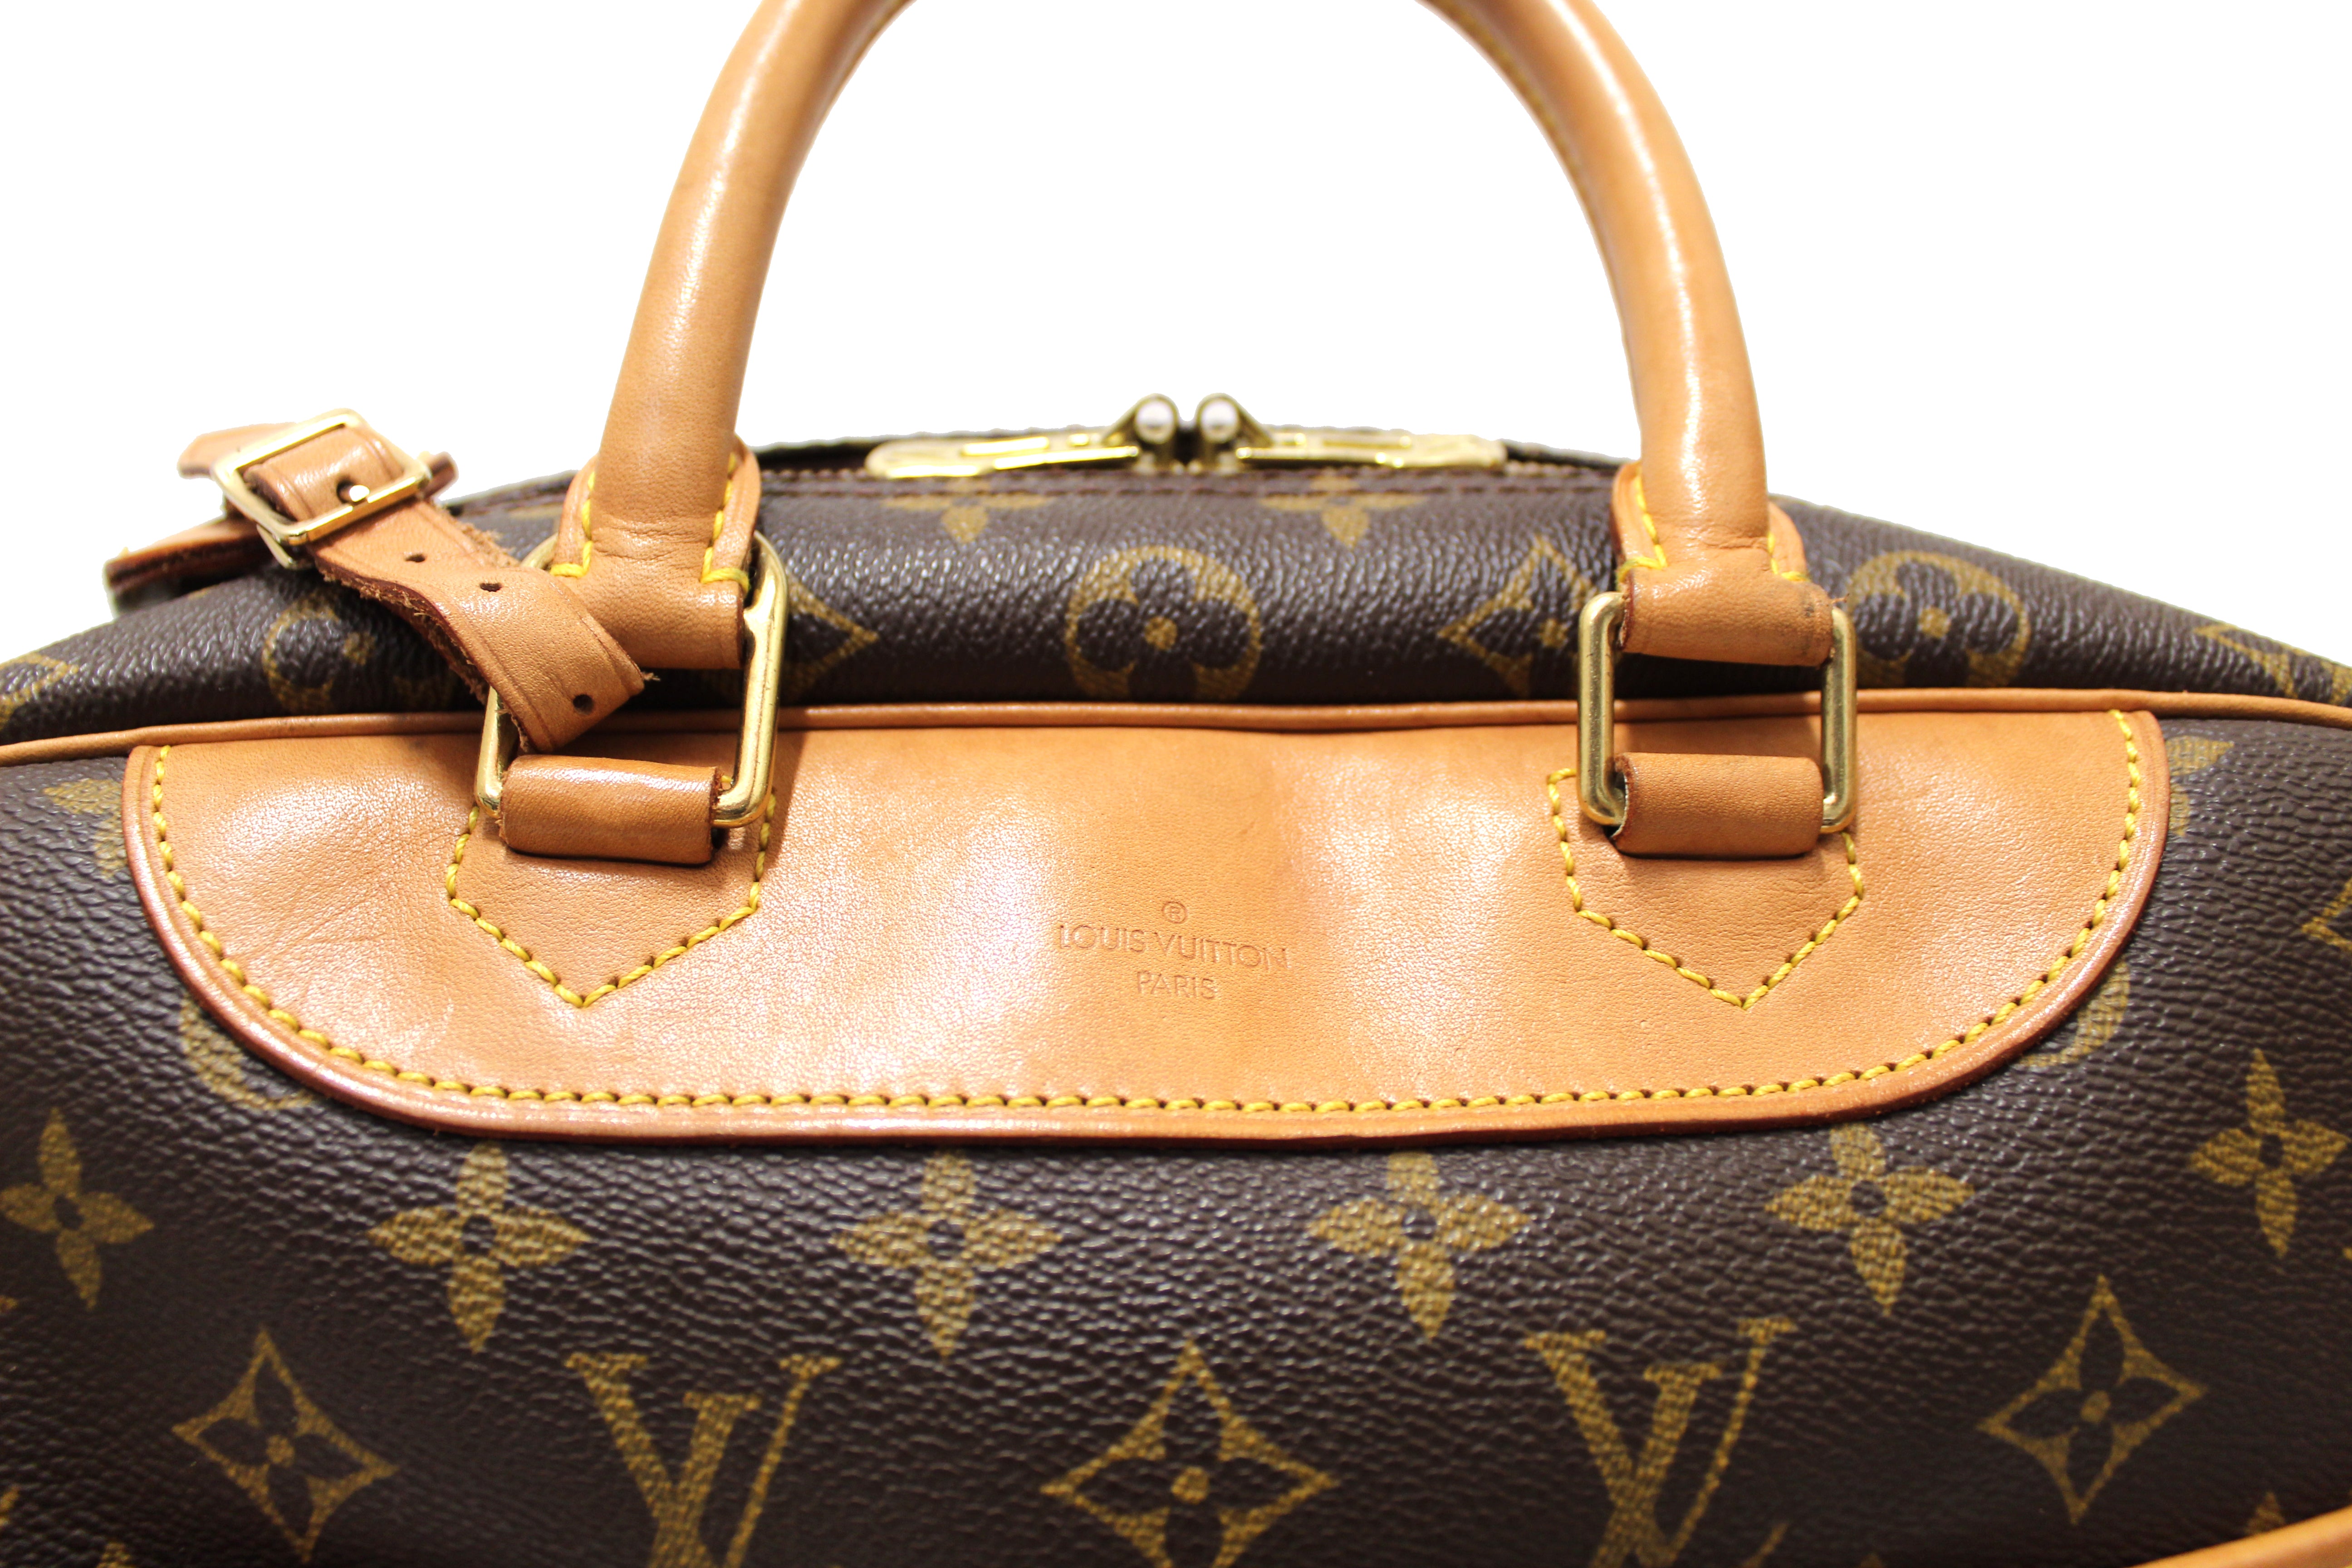 Authentic Louis Vuitton Classic Monogram Canvas Deauville Handbag